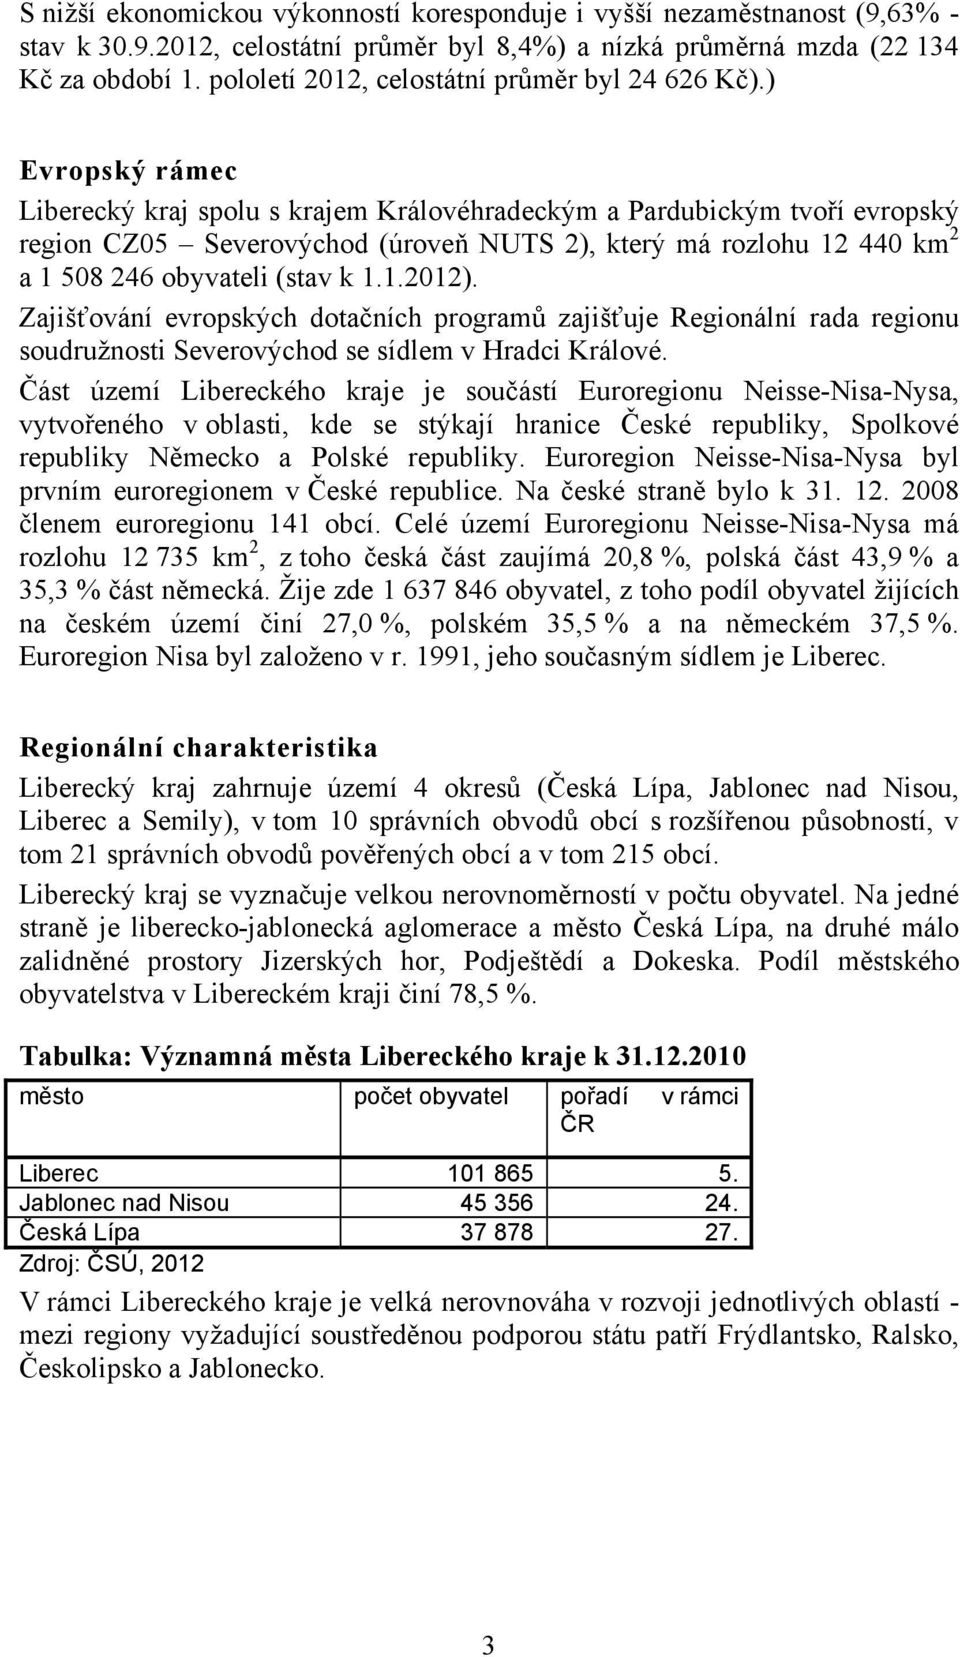 ) Evropský rámec Liberecký kraj spolu s krajem Královéhradeckým a Pardubickým tvoří evropský region CZ05 Severovýchod (úroveň NUTS 2), který má rozlohu 12 440 km 2 a 1 508 246 obyvateli (stav k 1.1.2012).